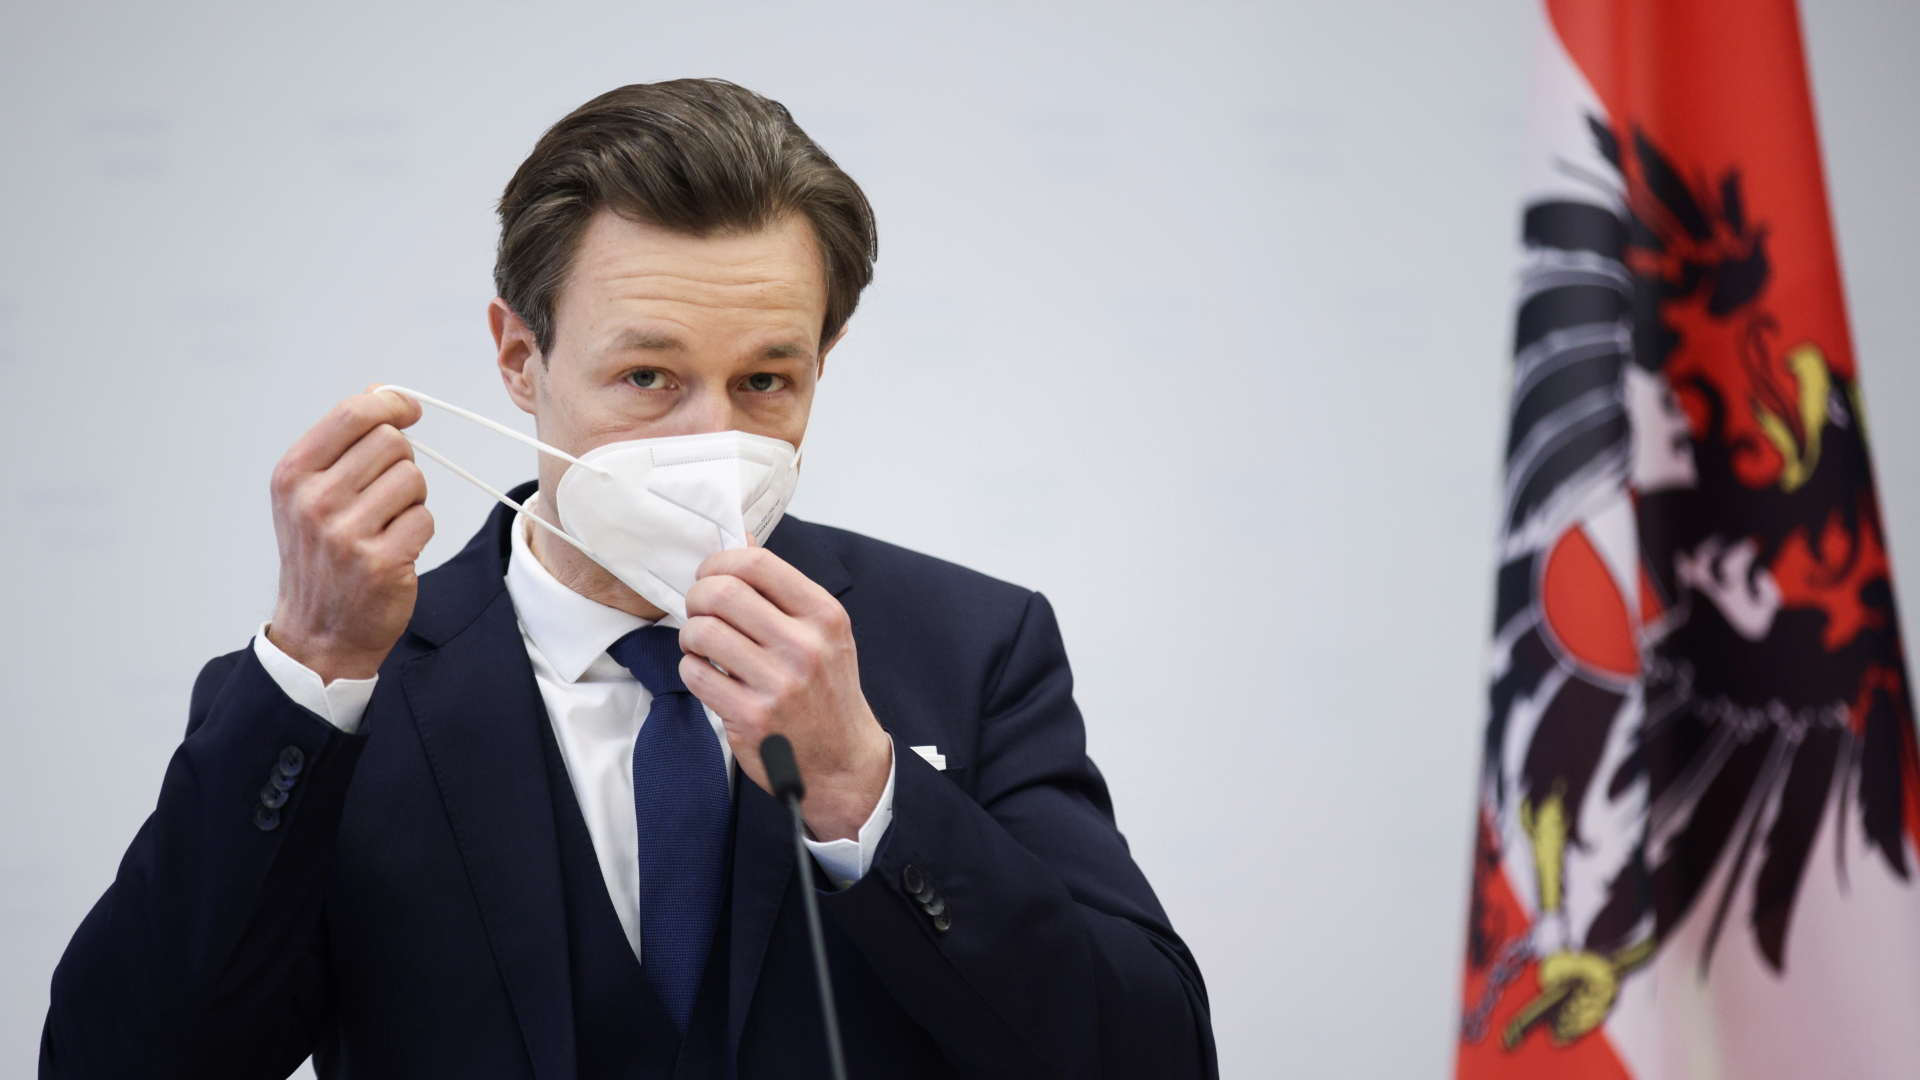 Der österreichische Finanzminister Blümel nimmt bei einer Pressekonferenz seine Schutzmaske ab. | REUTERS